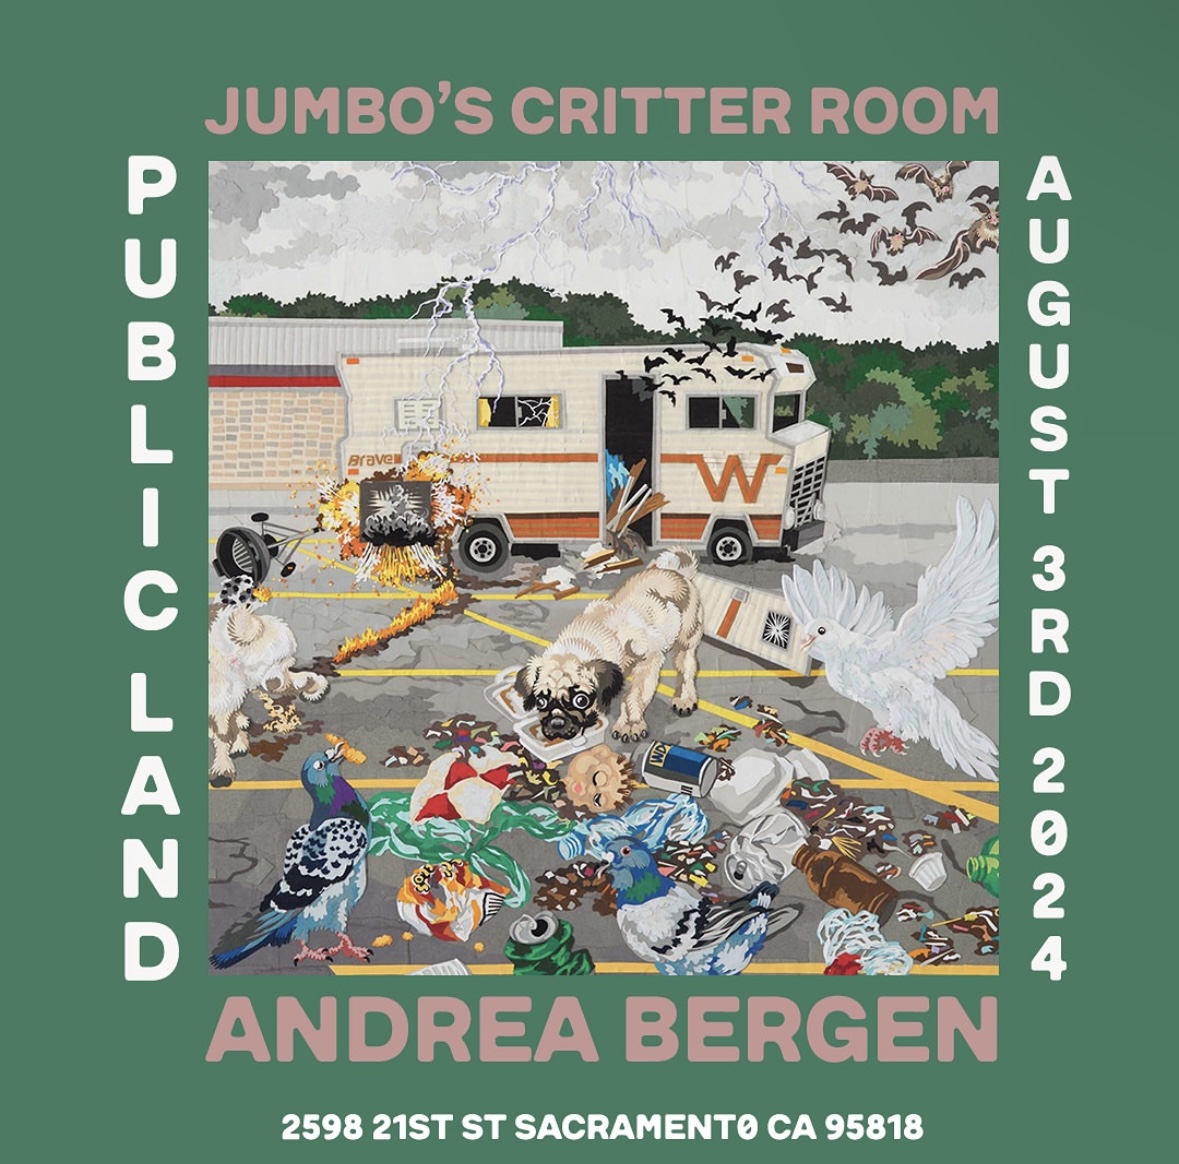 Andrea Bergen art opening/exhibit @ Public Land